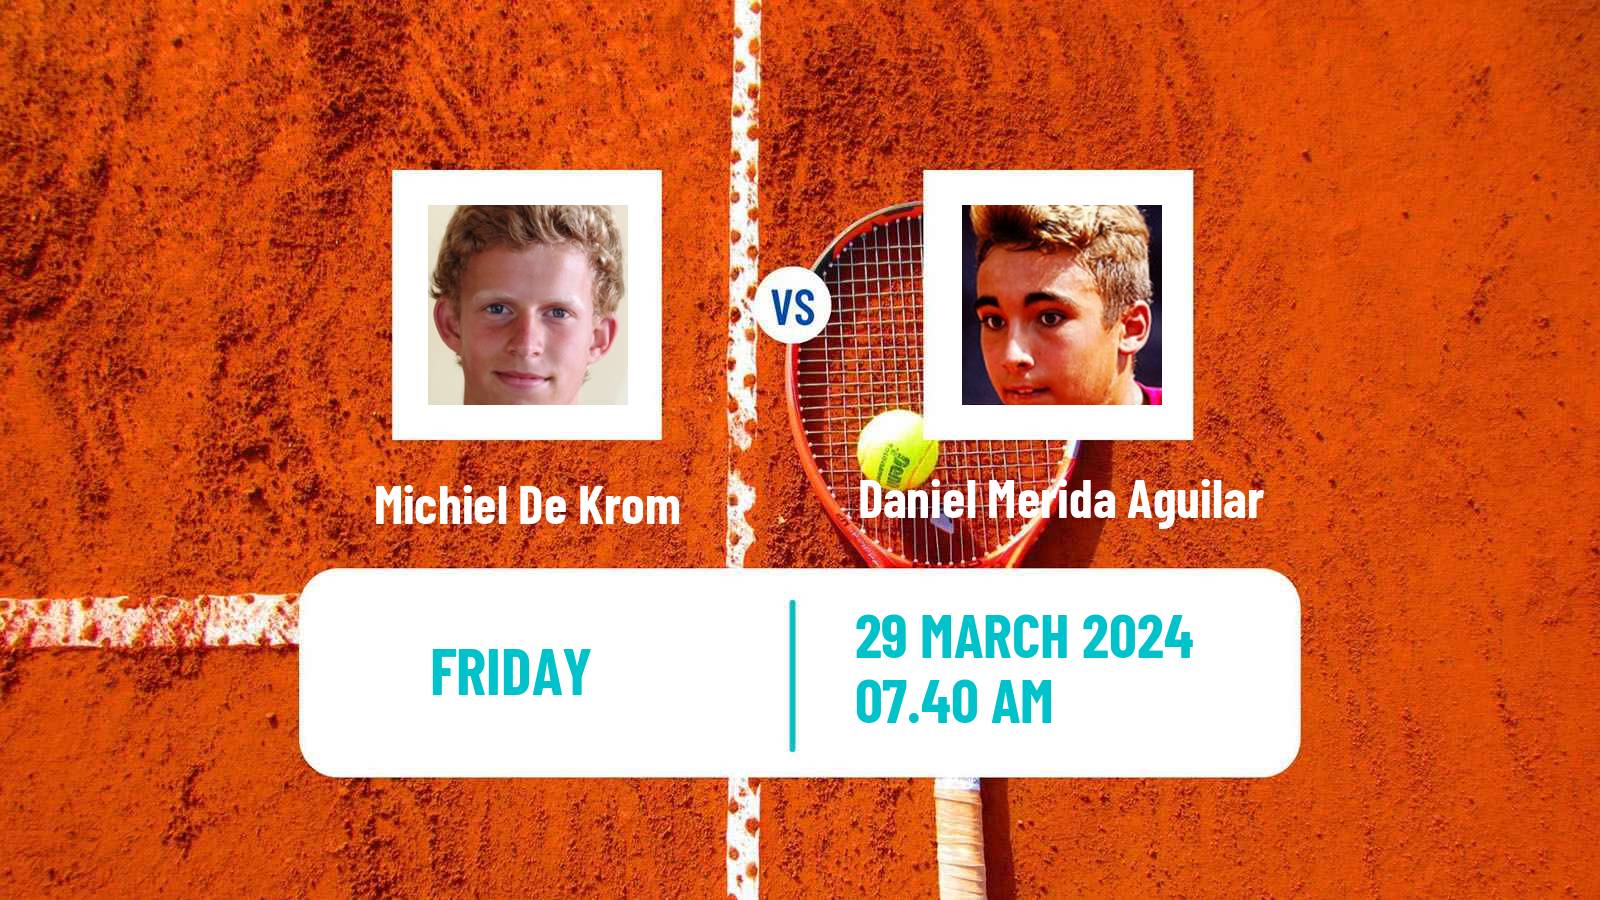 Tennis ITF M25 Tarragona Men Michiel De Krom - Daniel Merida Aguilar